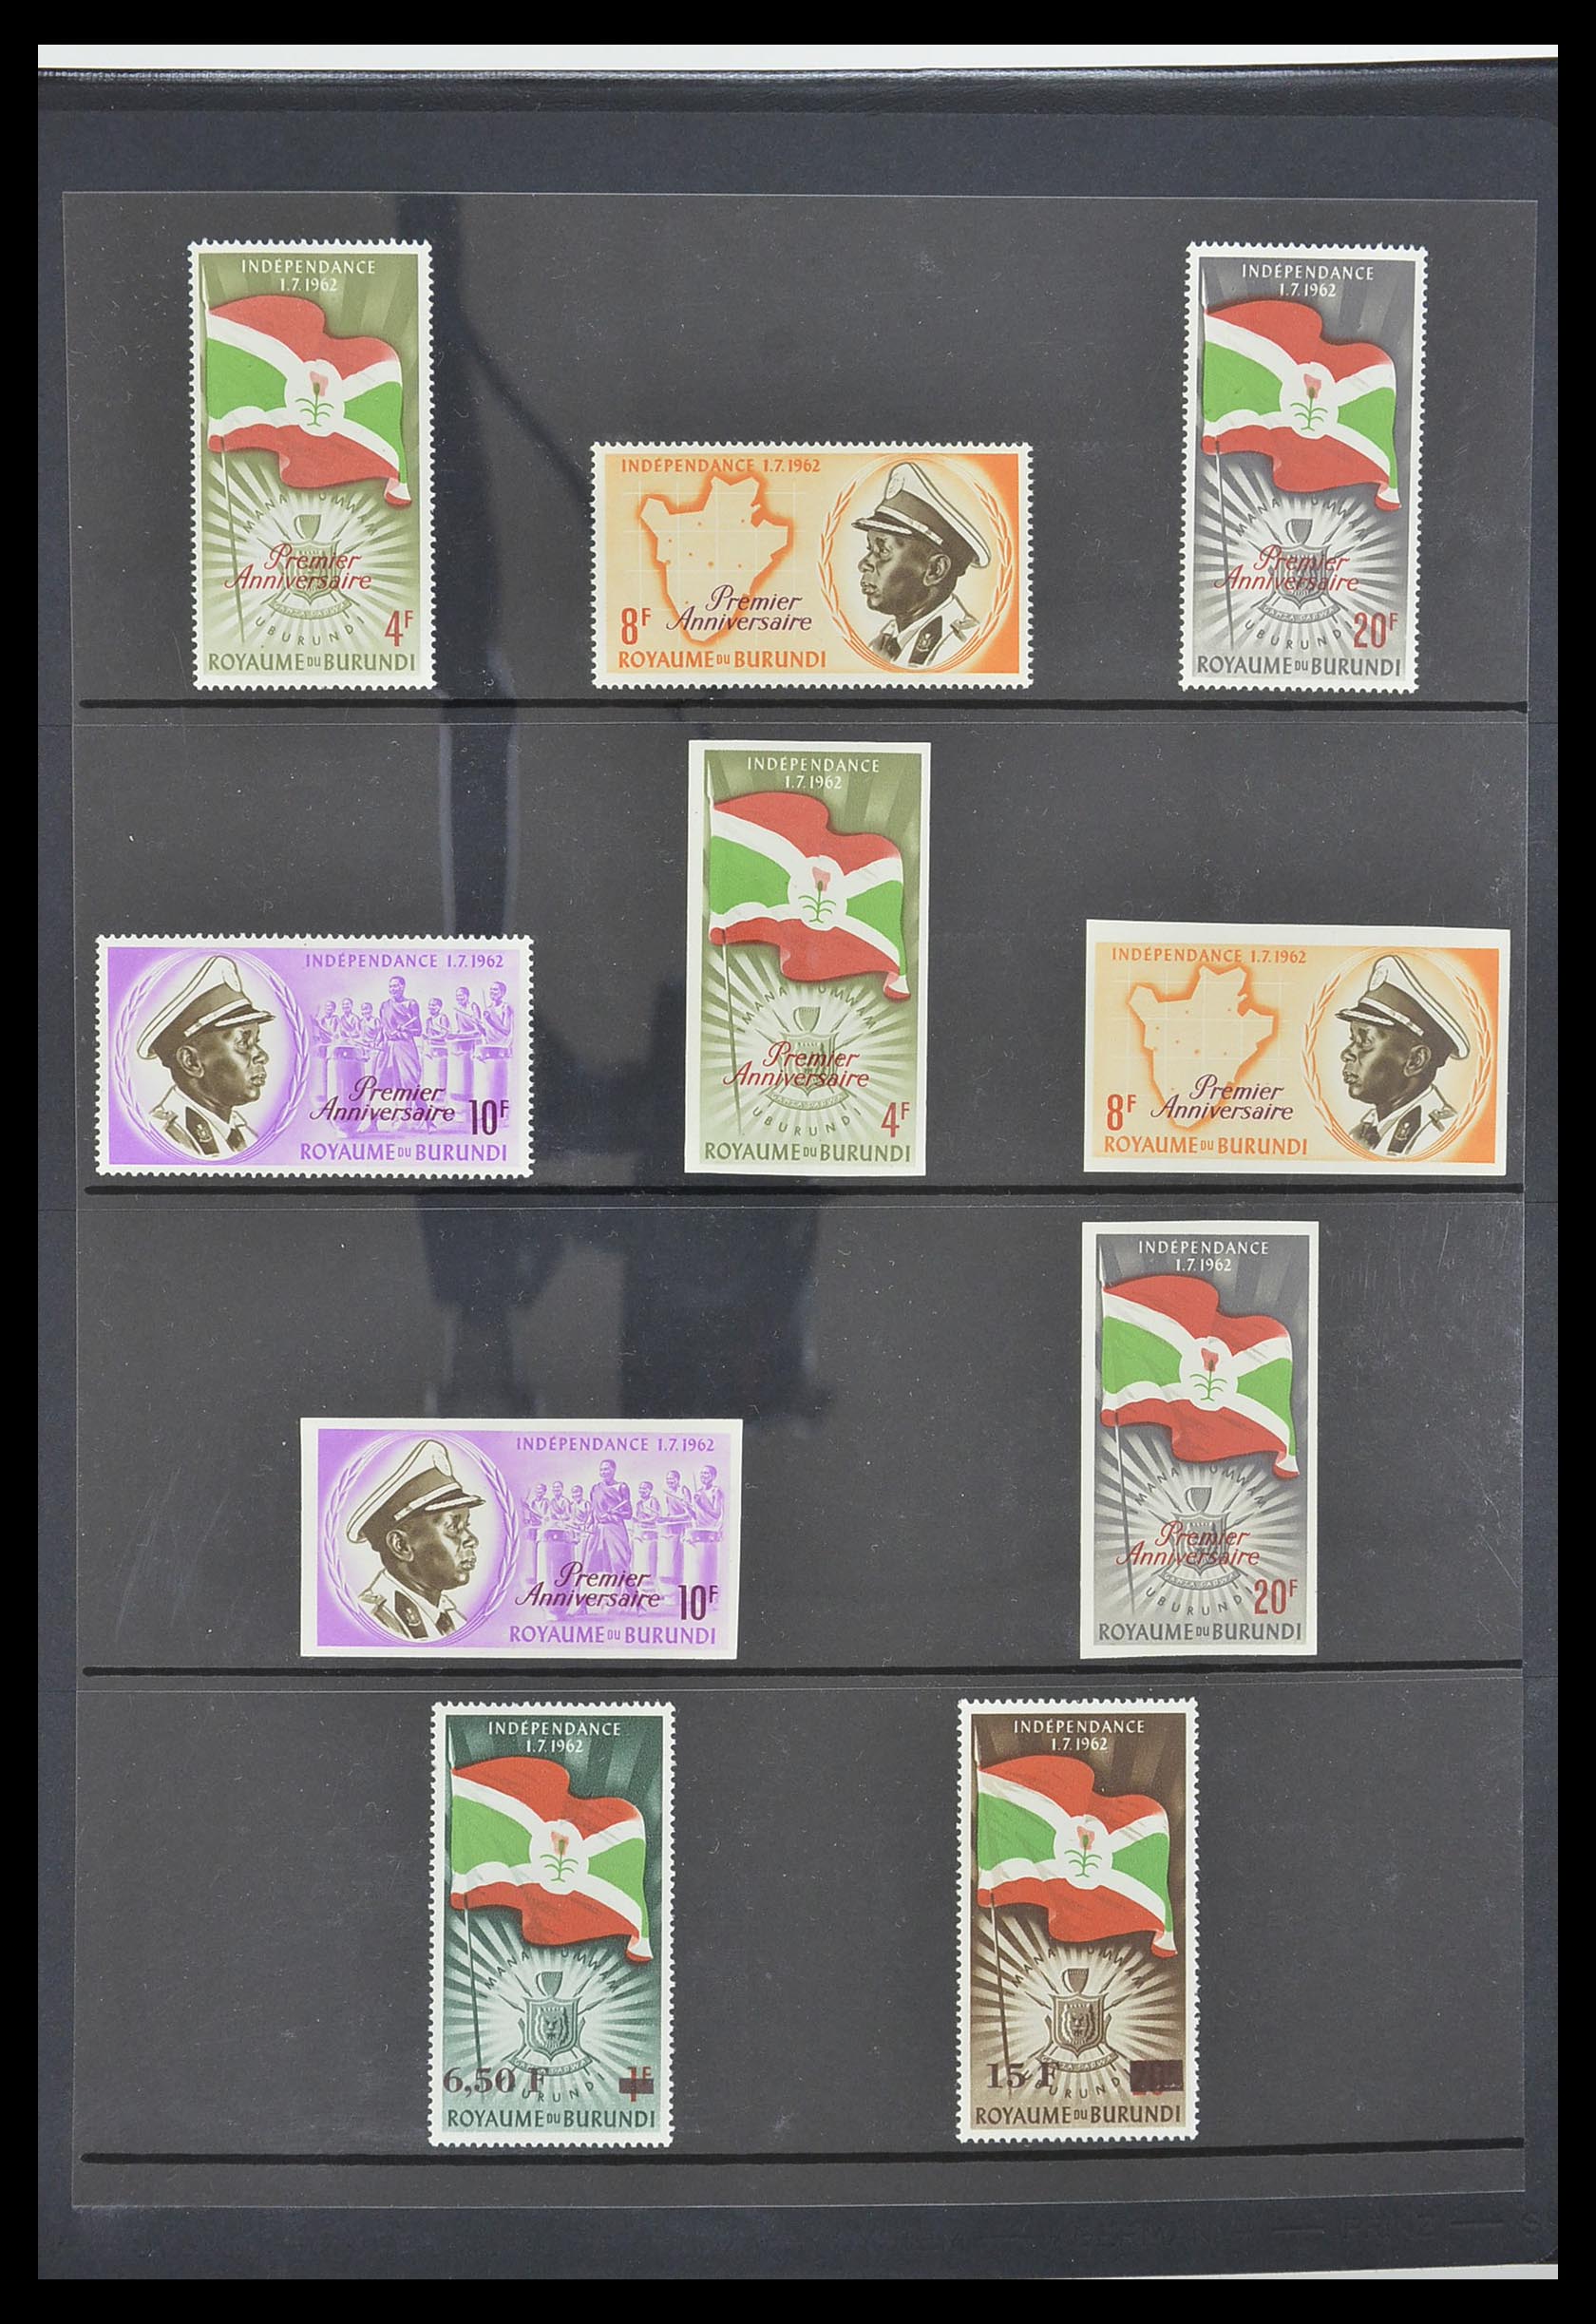 33764 007 - Stamp collection 33764 Burundi 1962-2004.